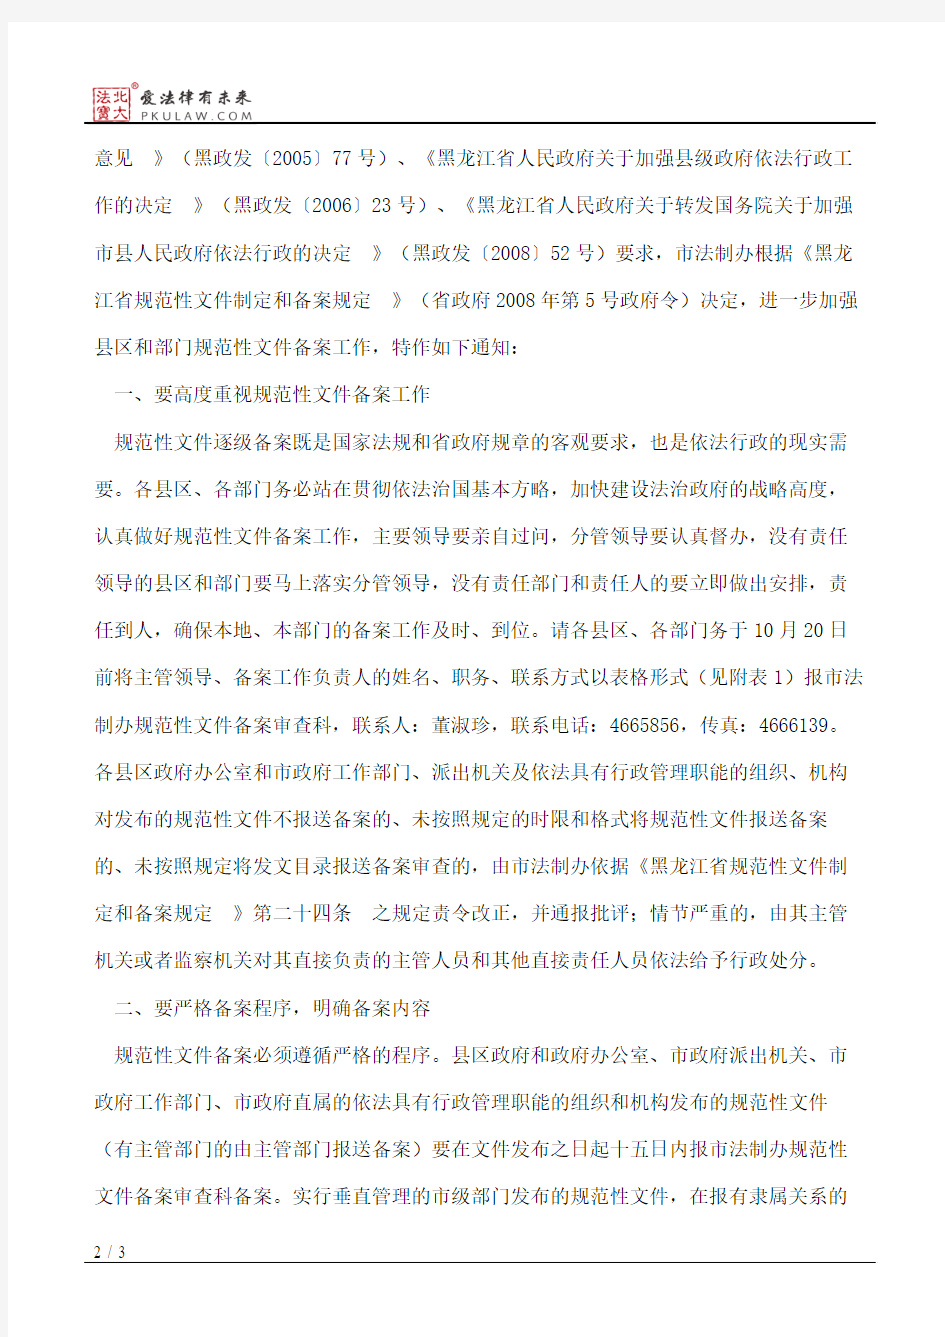 大庆市人民政府法制办公室关于进一步加强县区和部门规范性文件备